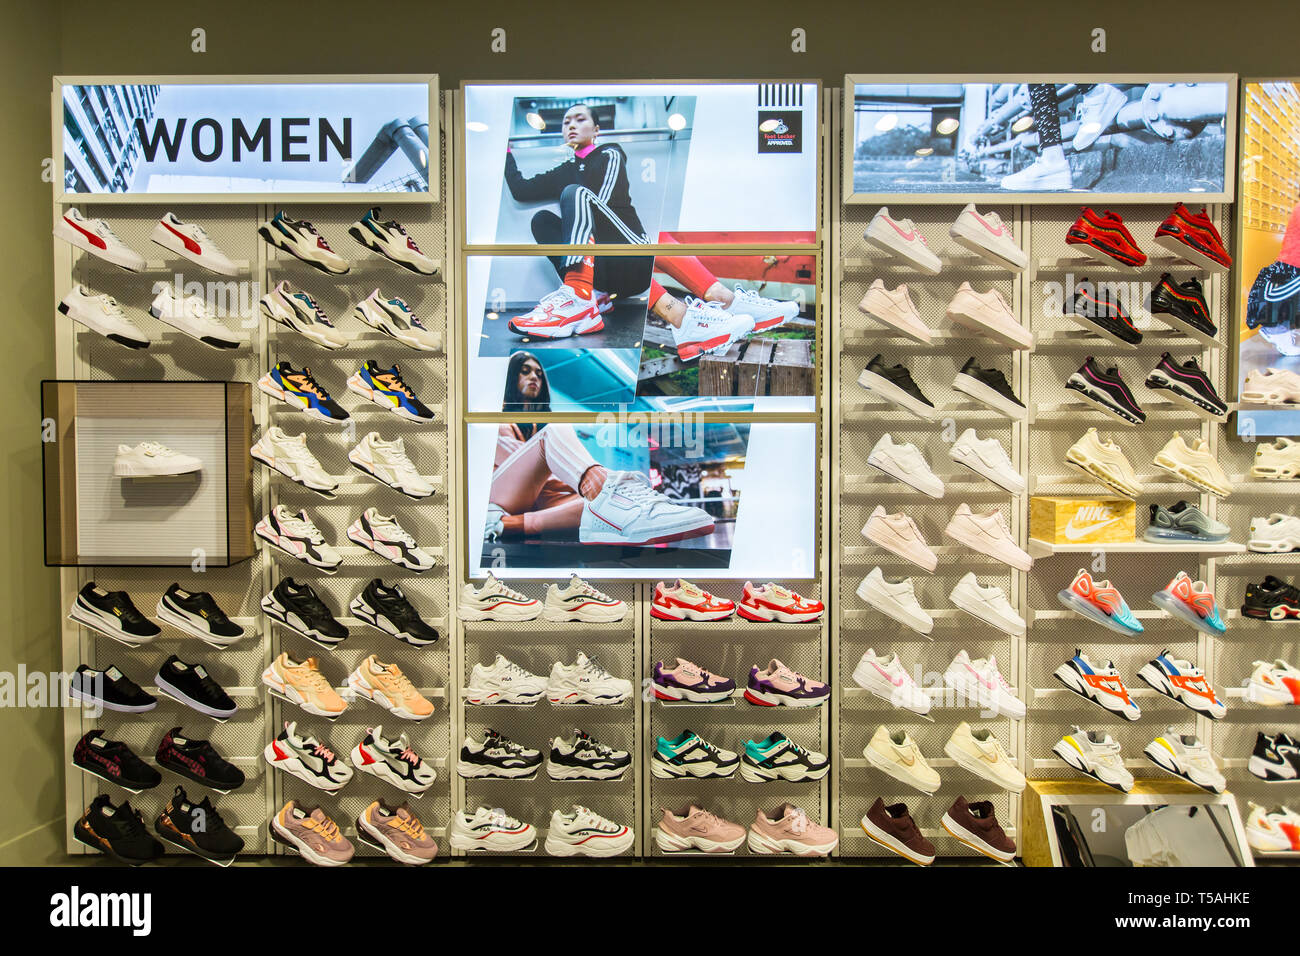 Sportschuhe oder Turnschuhe für Damen werden ordentlich im Foot locker  Store in Singapur ausgestellt Stockfotografie - Alamy